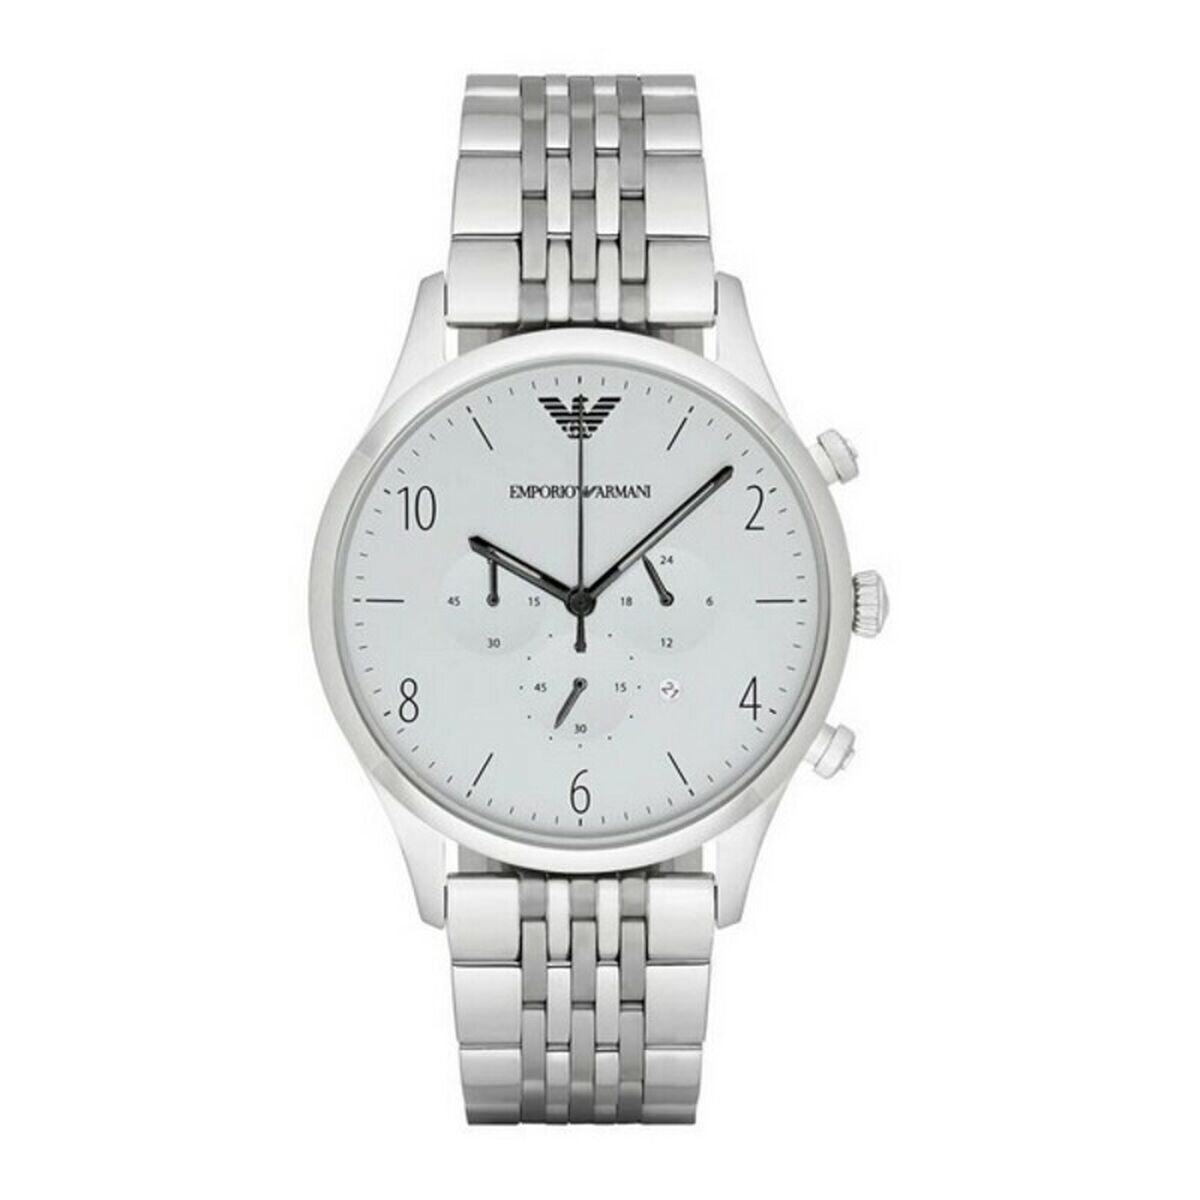 Men's Silver Chronograph Armani Watch